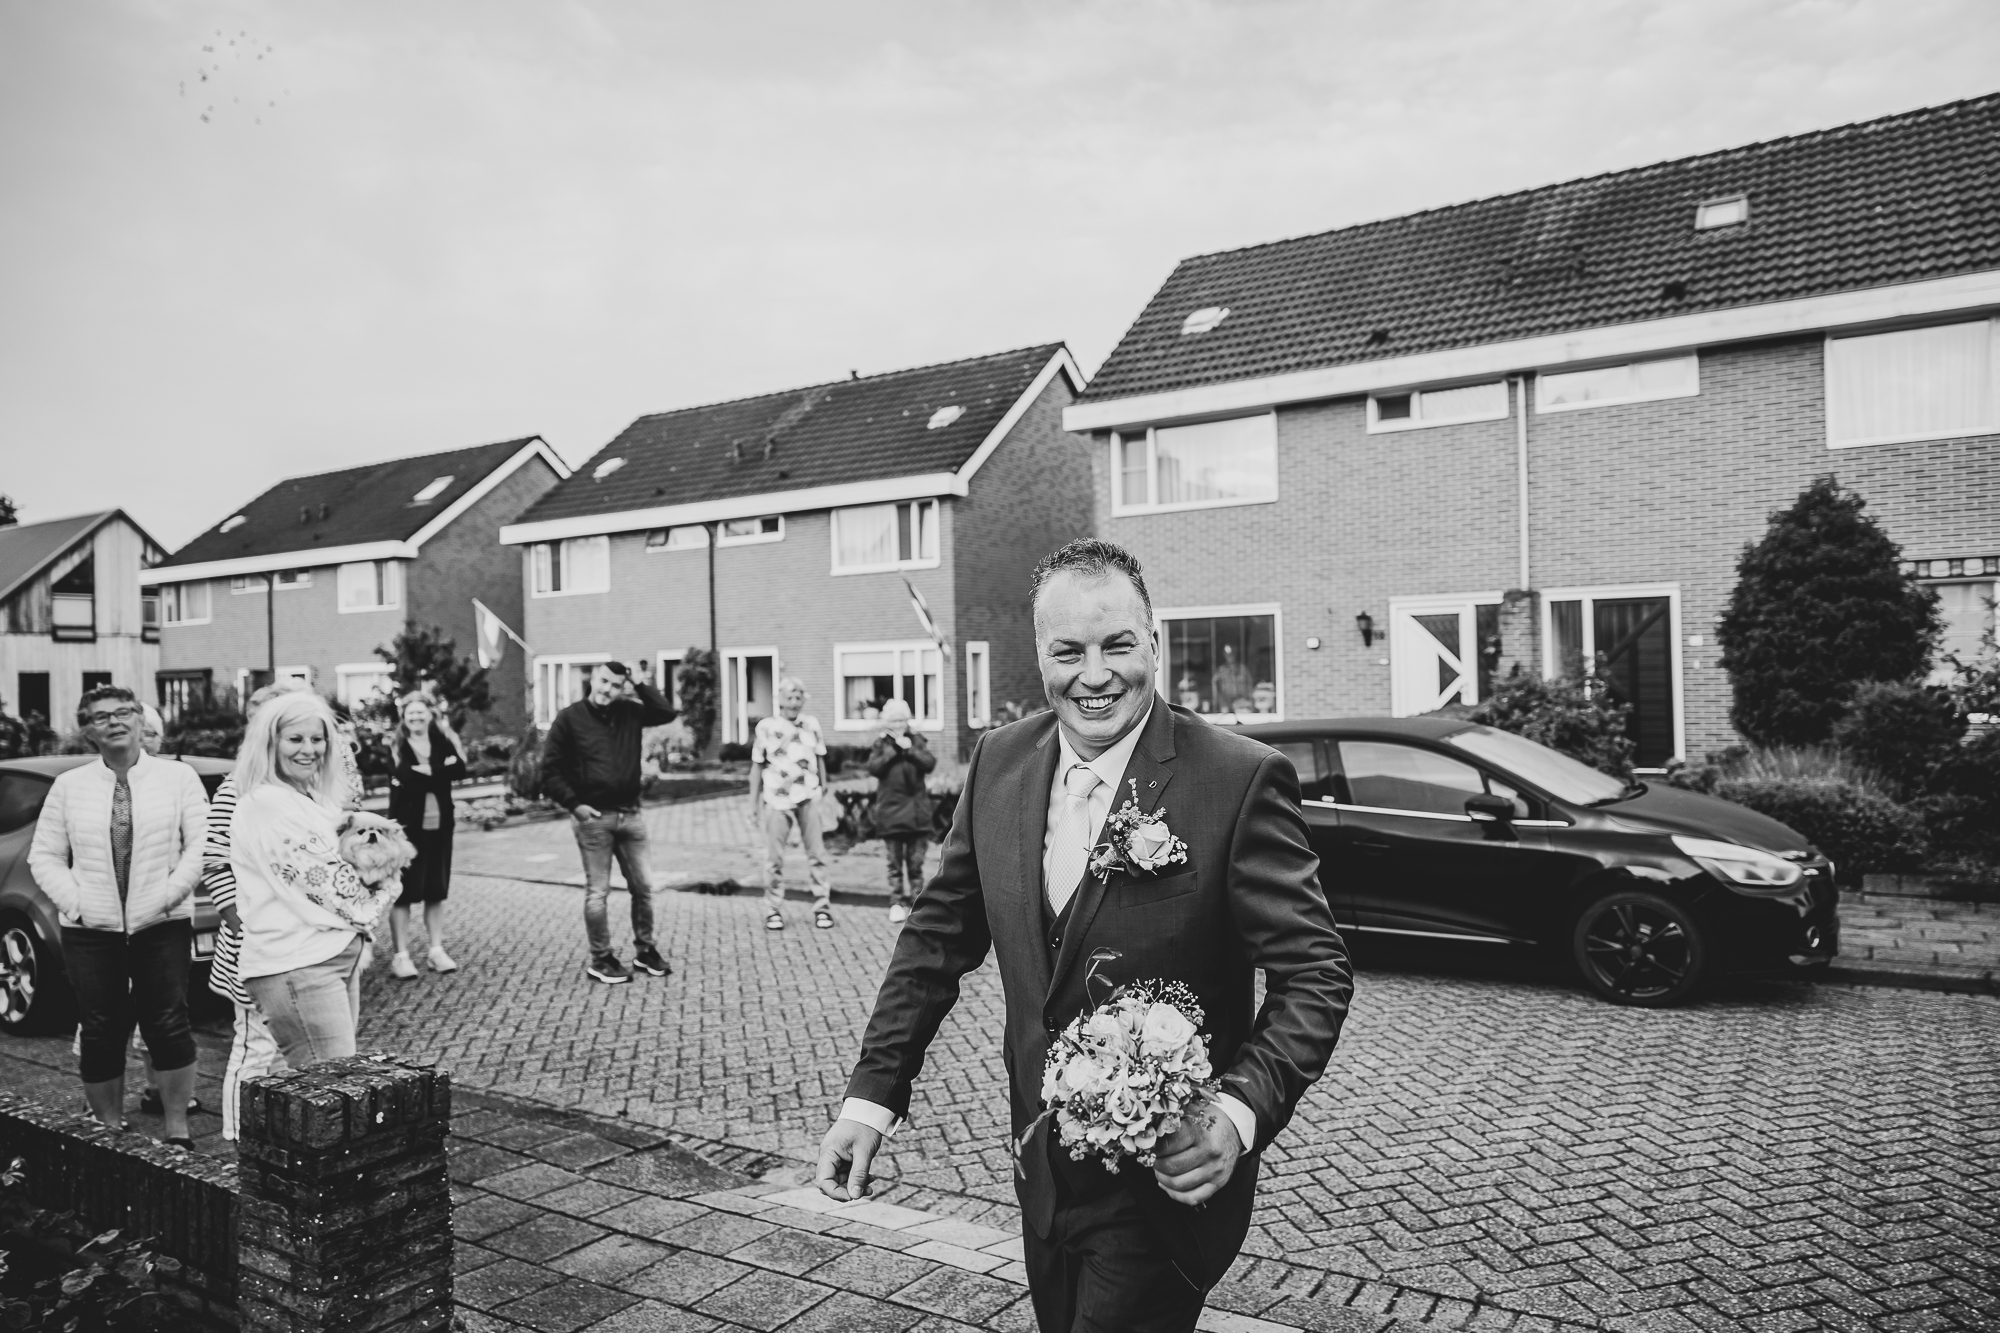 Bruidegom haalt zijn bruid op. Fotoreportage door fotograaf Nickie Fotografie uit Dokkum, Friesland.